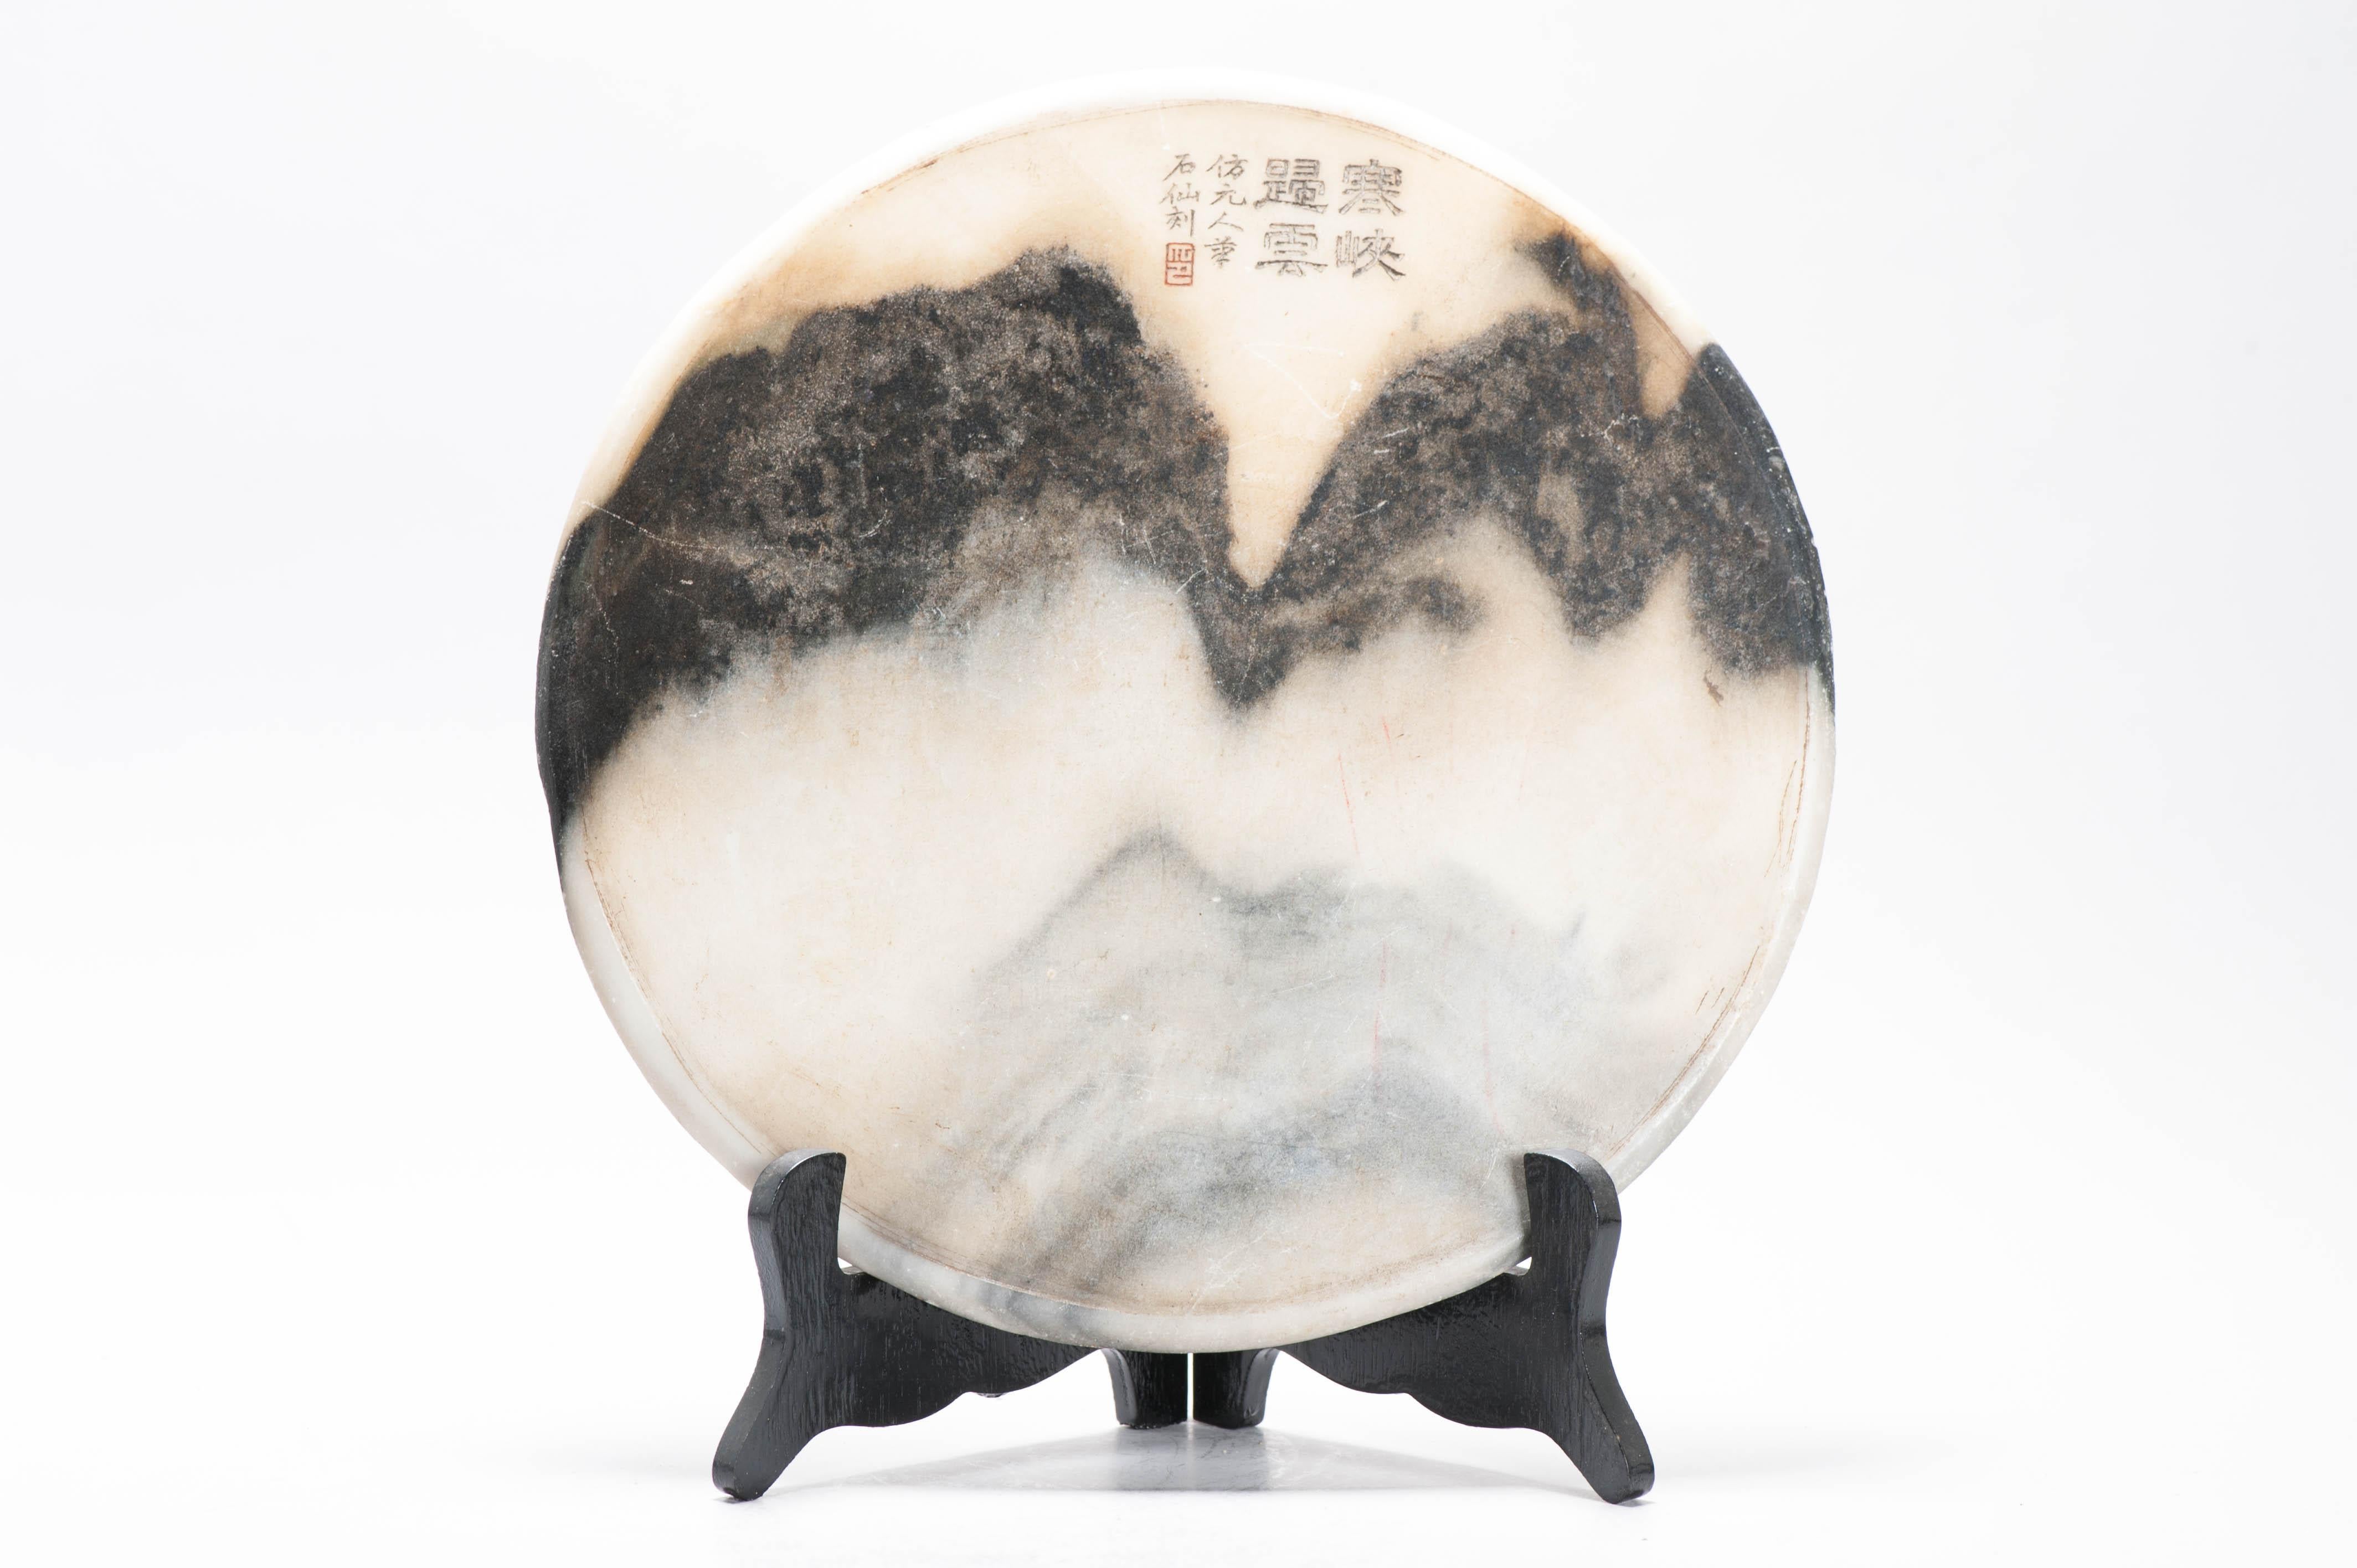 Ein chinesischer Landschaftstraumstein. Beschriftet mit einem Gedicht aus dem 19. Jahrhundert. Der Stein erinnert an die Yuan-Landschaften im Stil von Ni Zan. Diese Felsen wurden von chinesischen Literaten und Gelehrten sehr geschätzt. Diese